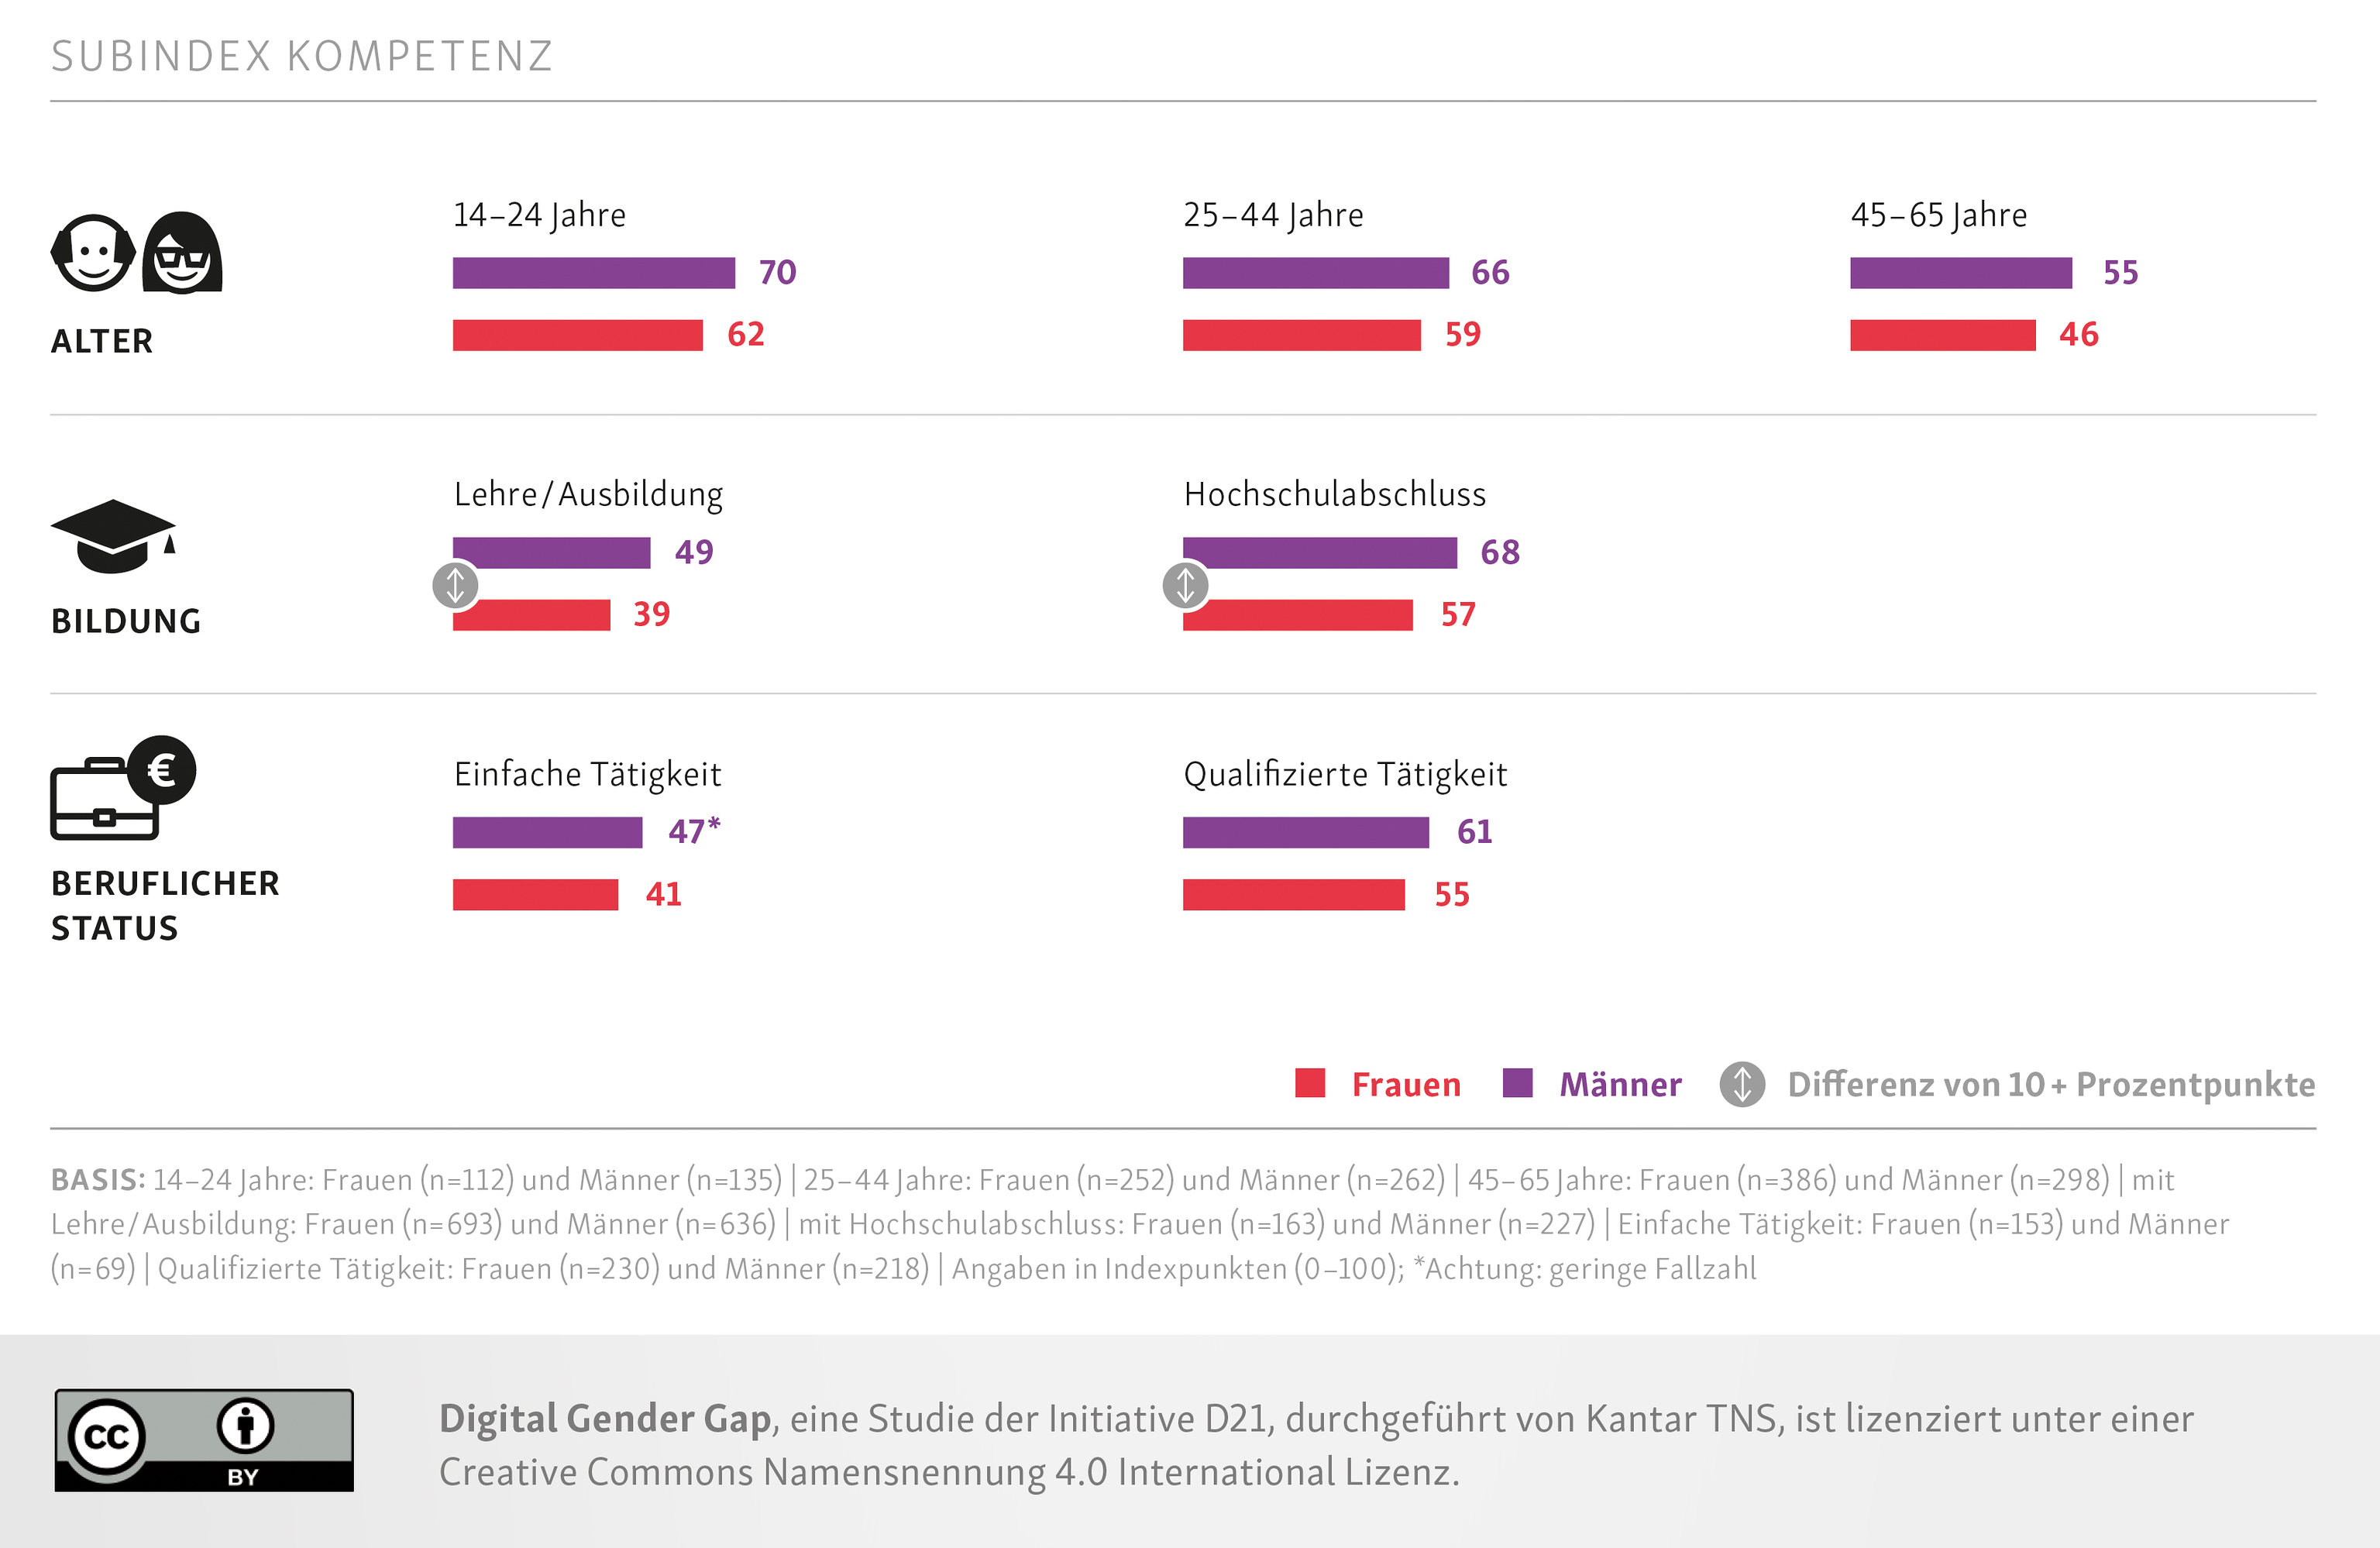 Digital Gender Gap Kompetenzindex differenziert